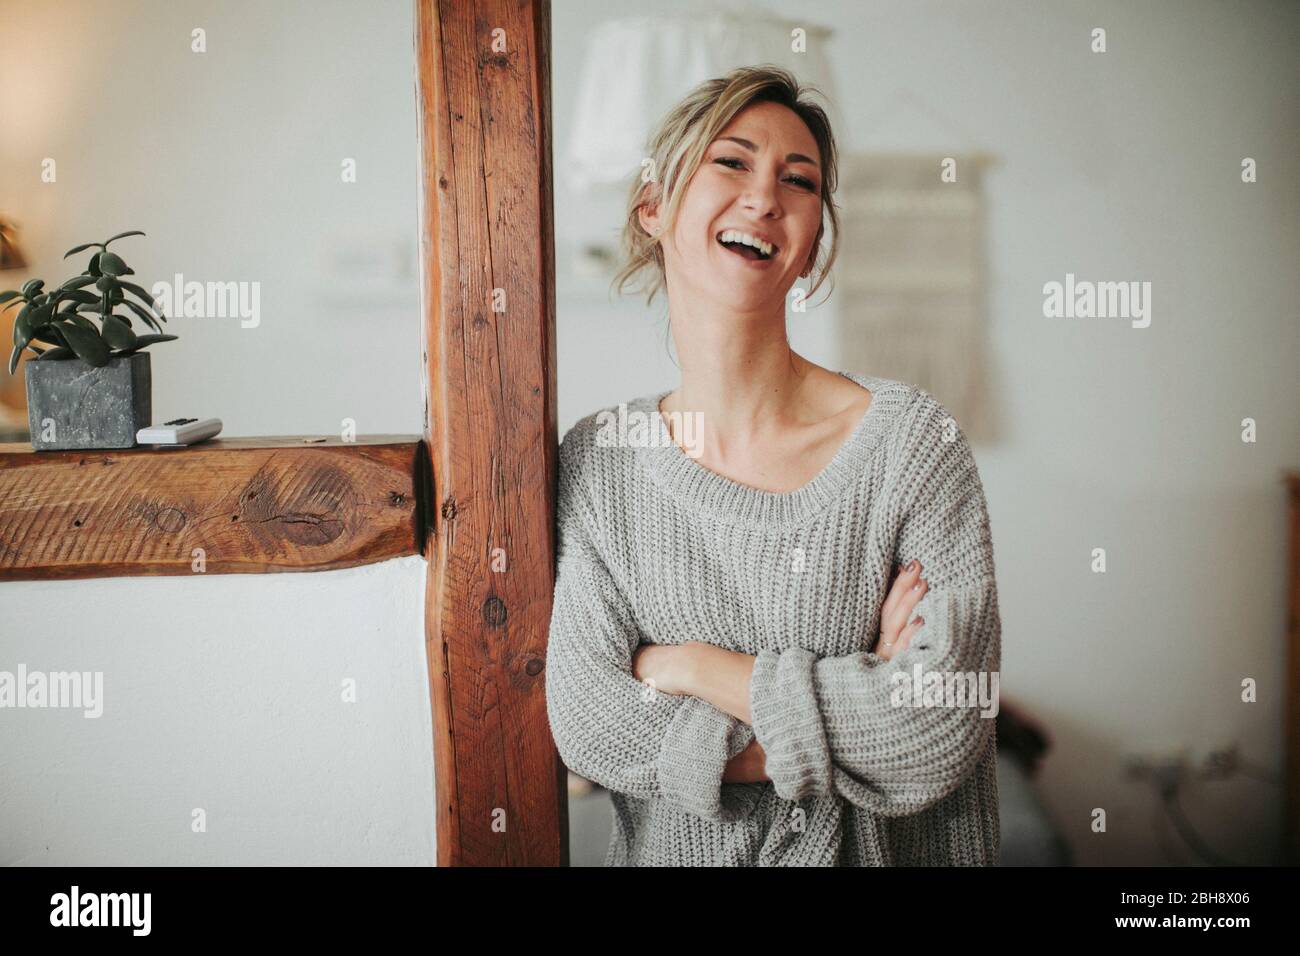 junge Frau in ihrer Wohnung, Arme verschränkt, lachen, Halbporträt Stock Photo